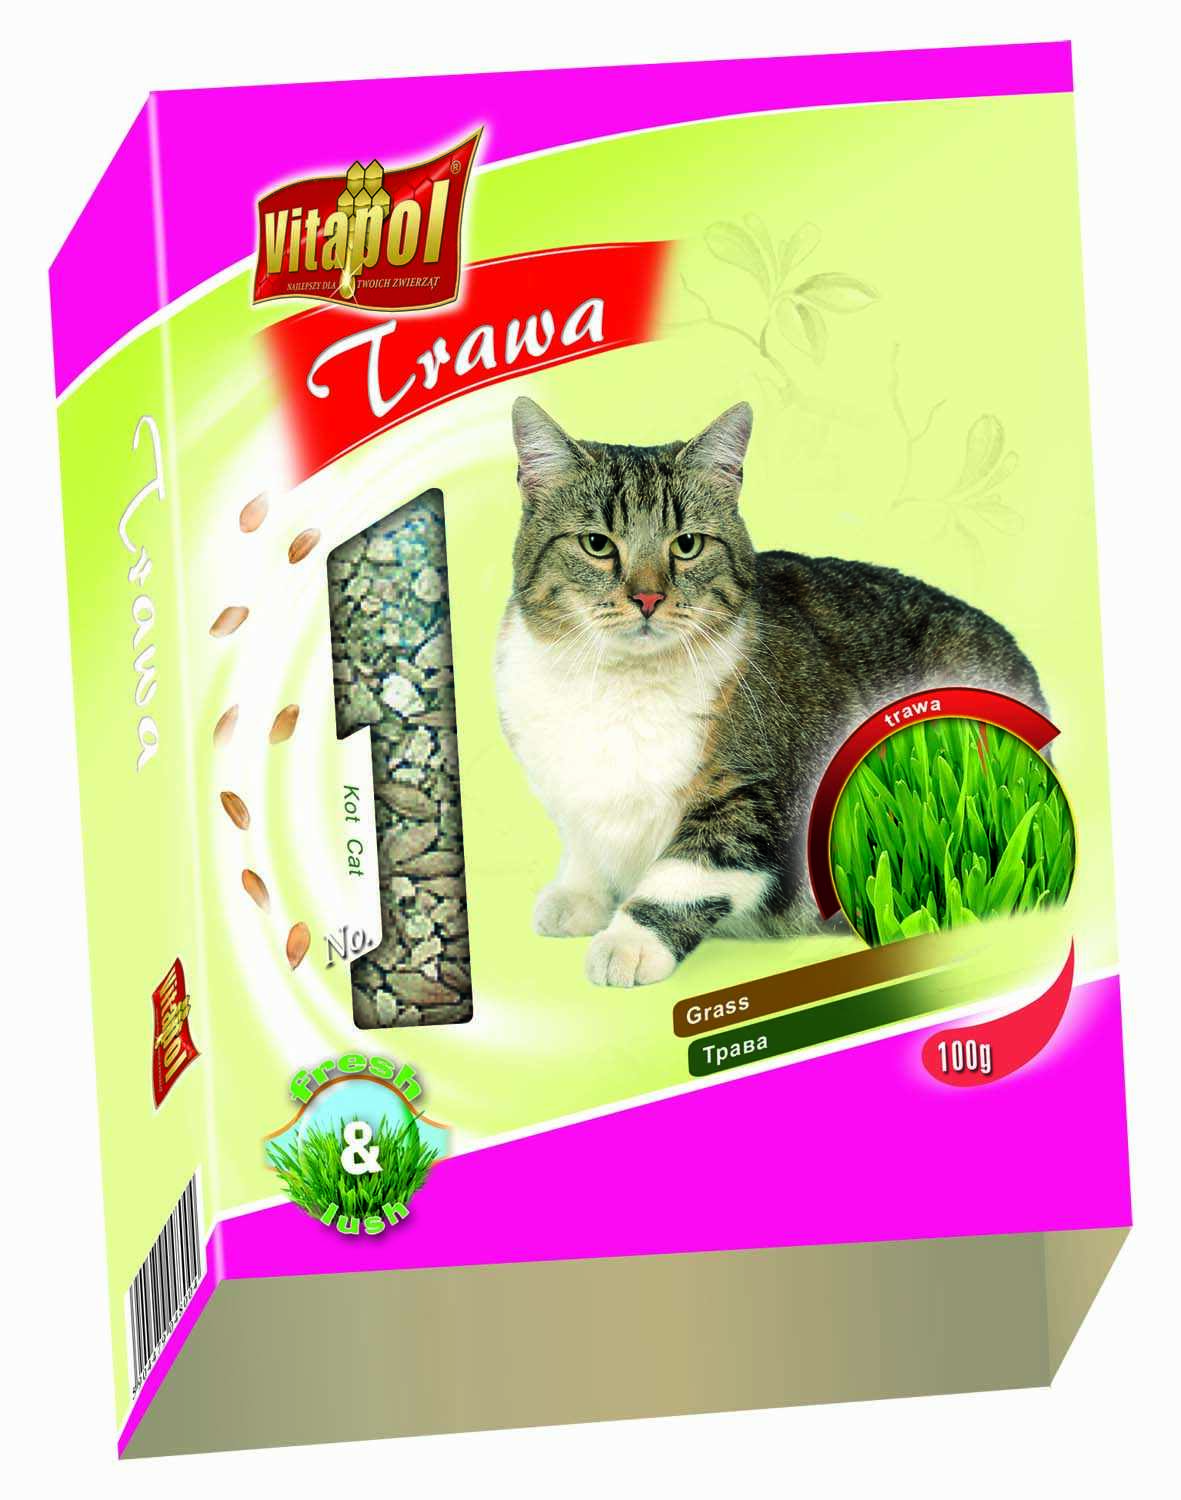 VITAPOL Iarbă pentru pisici, seminţe 100g